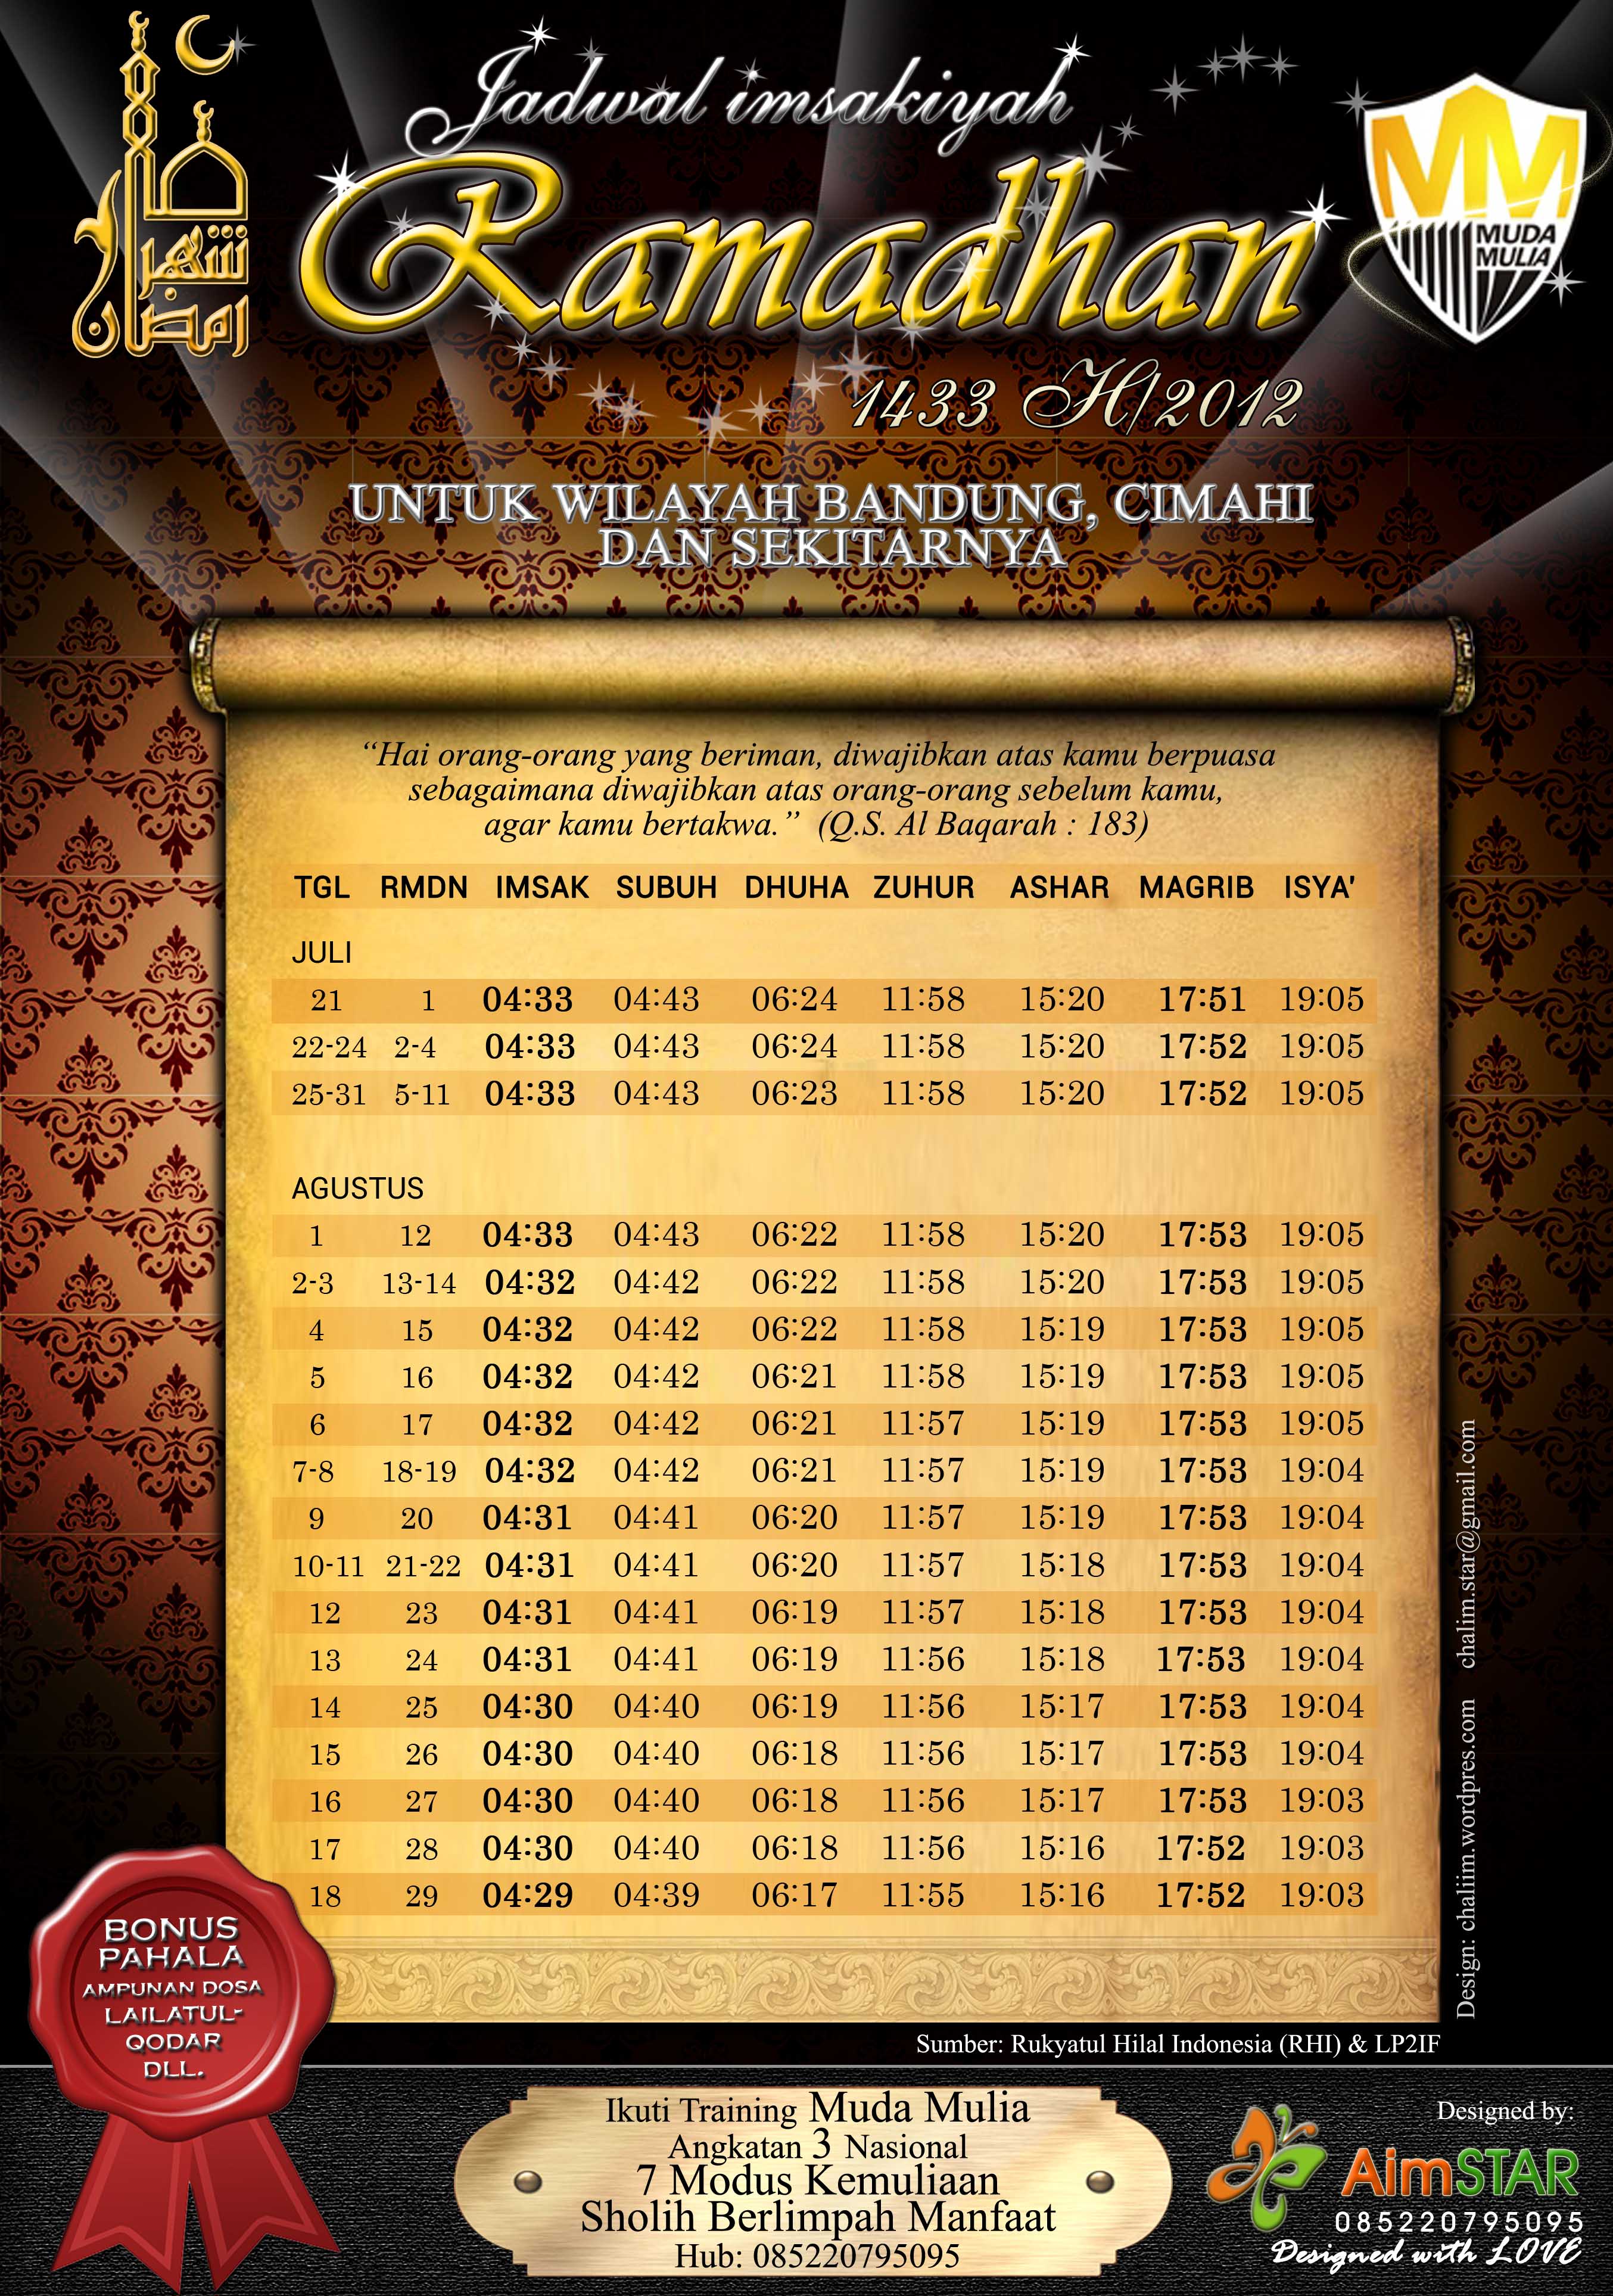 Jadwal Imsayakiyah Ramadhan 1433 H 2012 untuk Kota Bandung 